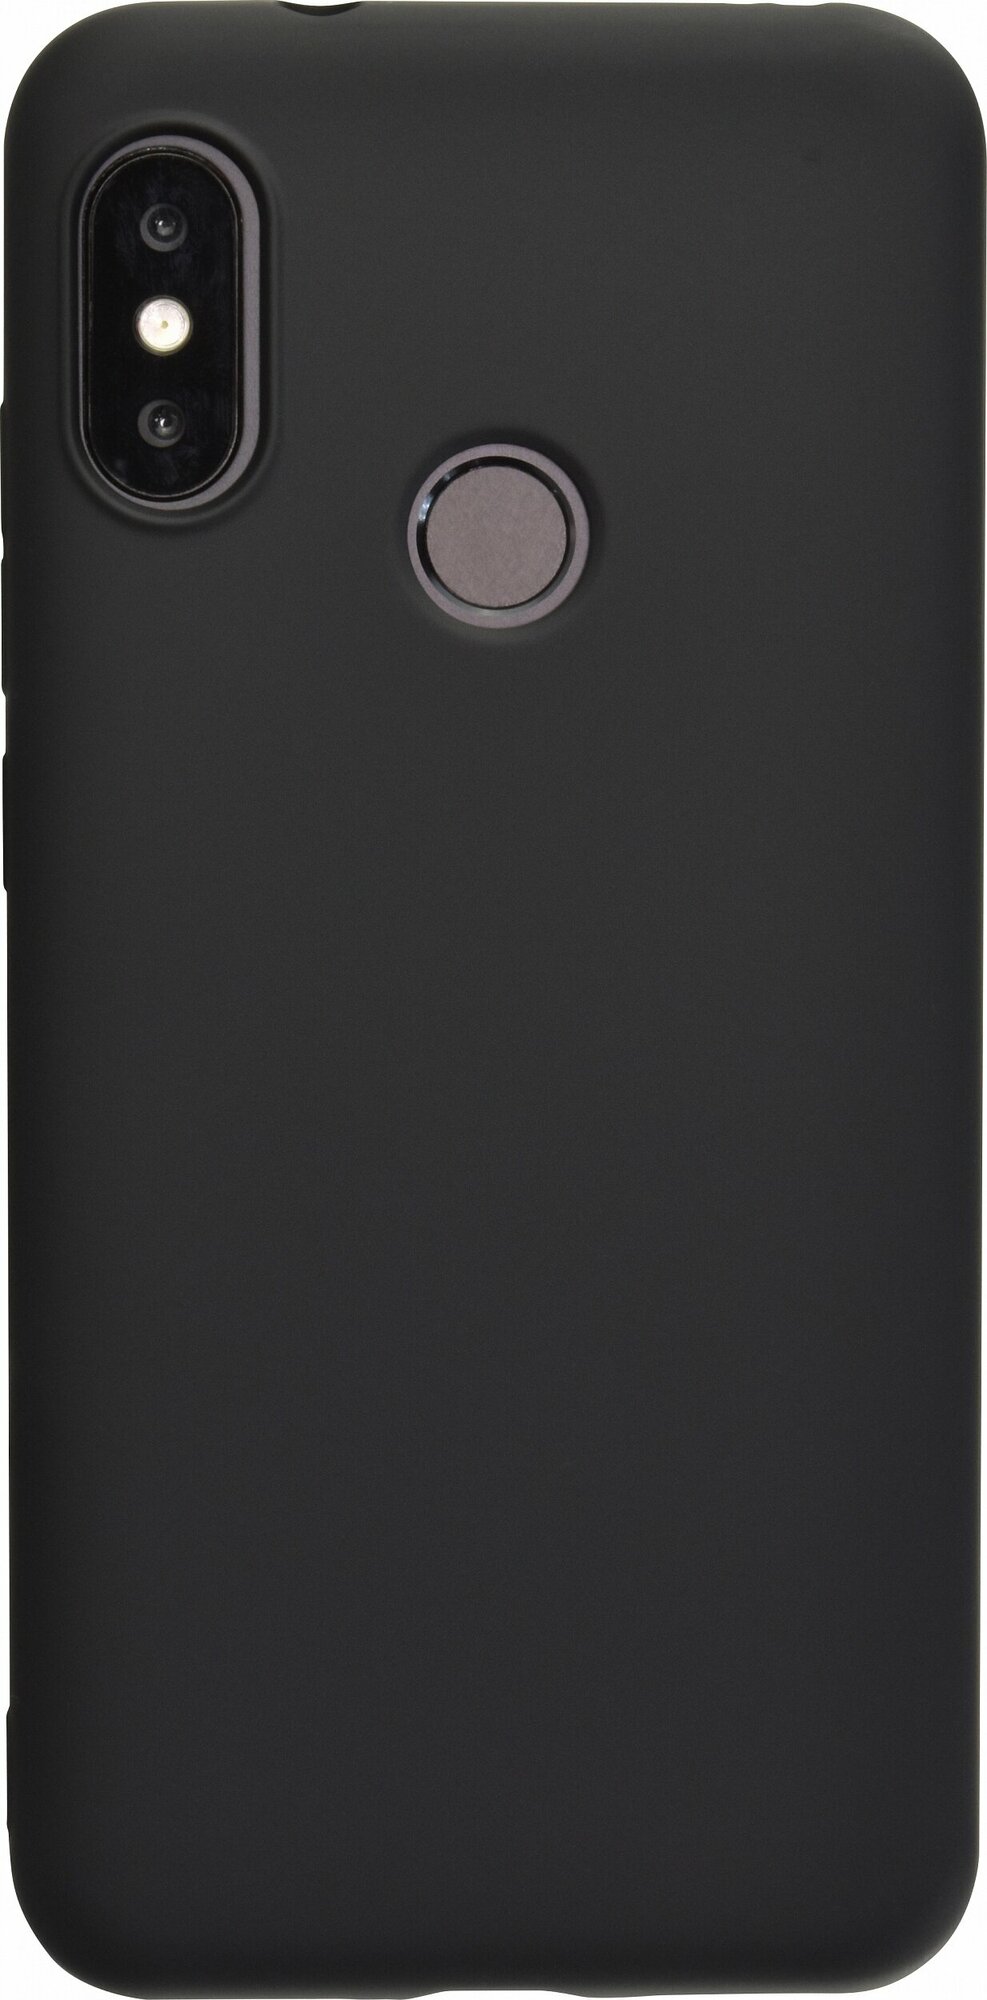 Силиконовый чехол матовый для Xiaomi Redmi 6 Pro\ A2 Lite черный